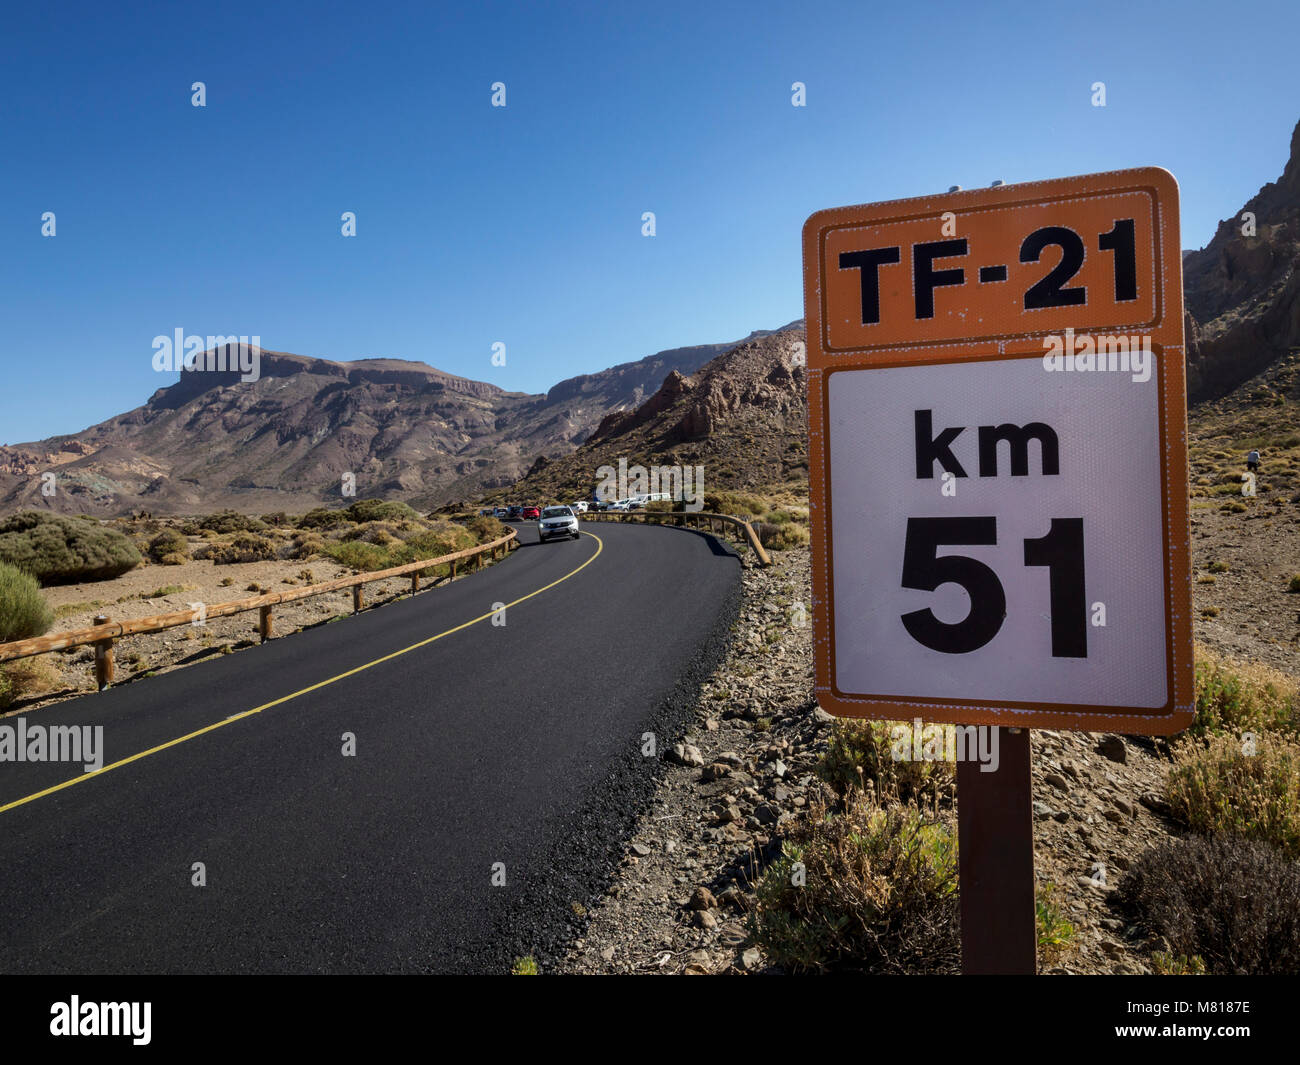 Tenerife, Îles Canaries - l'autoroute TF-21 dans les Cañadas du Teide caldera zone désertique Banque D'Images